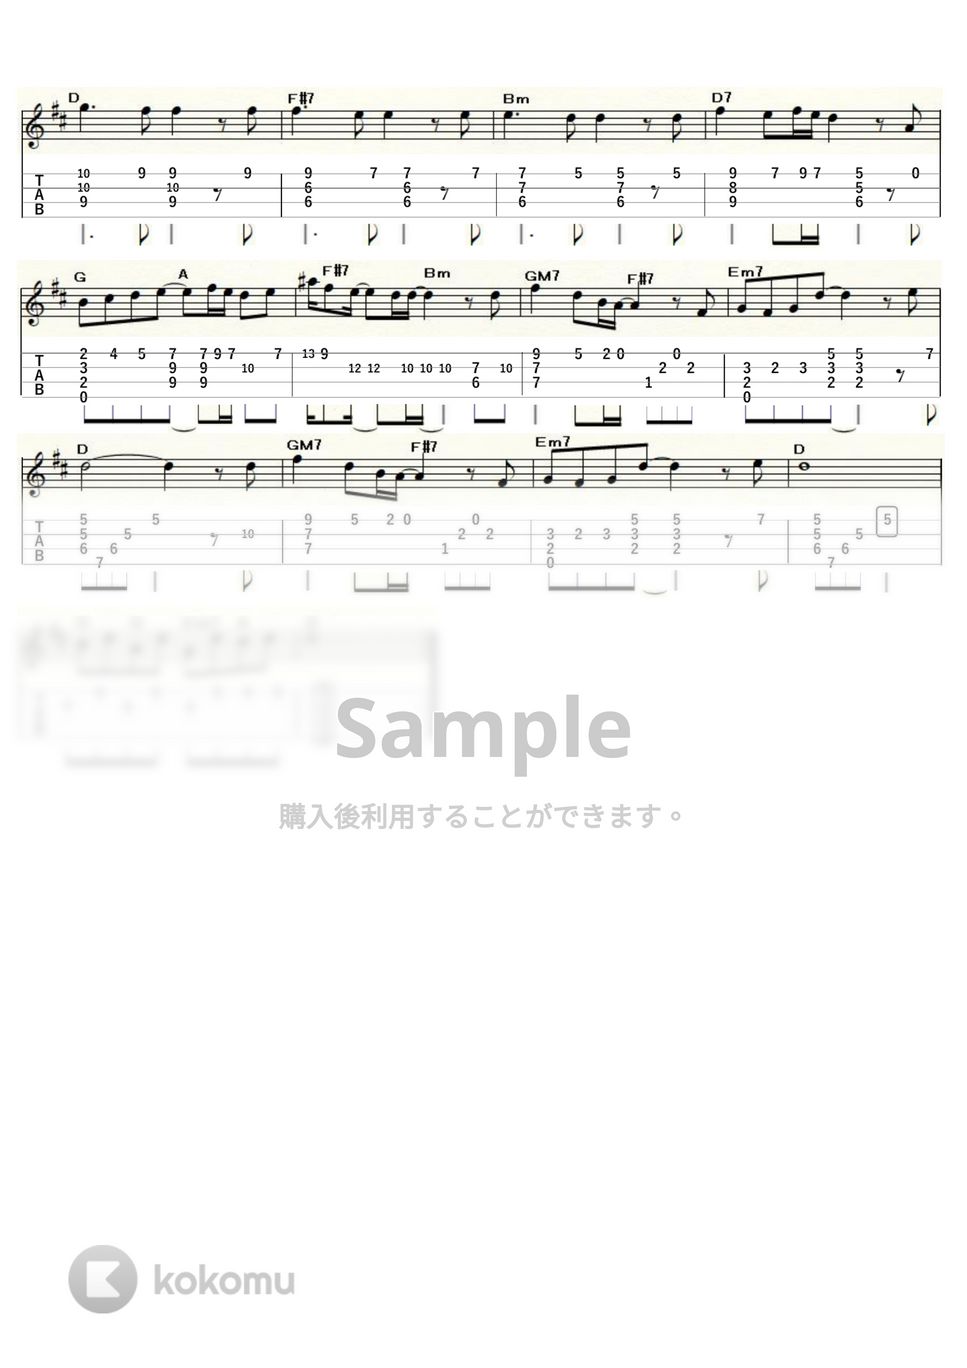 サザンオールスターズ - TSUNAMI (ｳｸﾚﾚｿﾛ / Low-G / 中級) by ukulelepapa